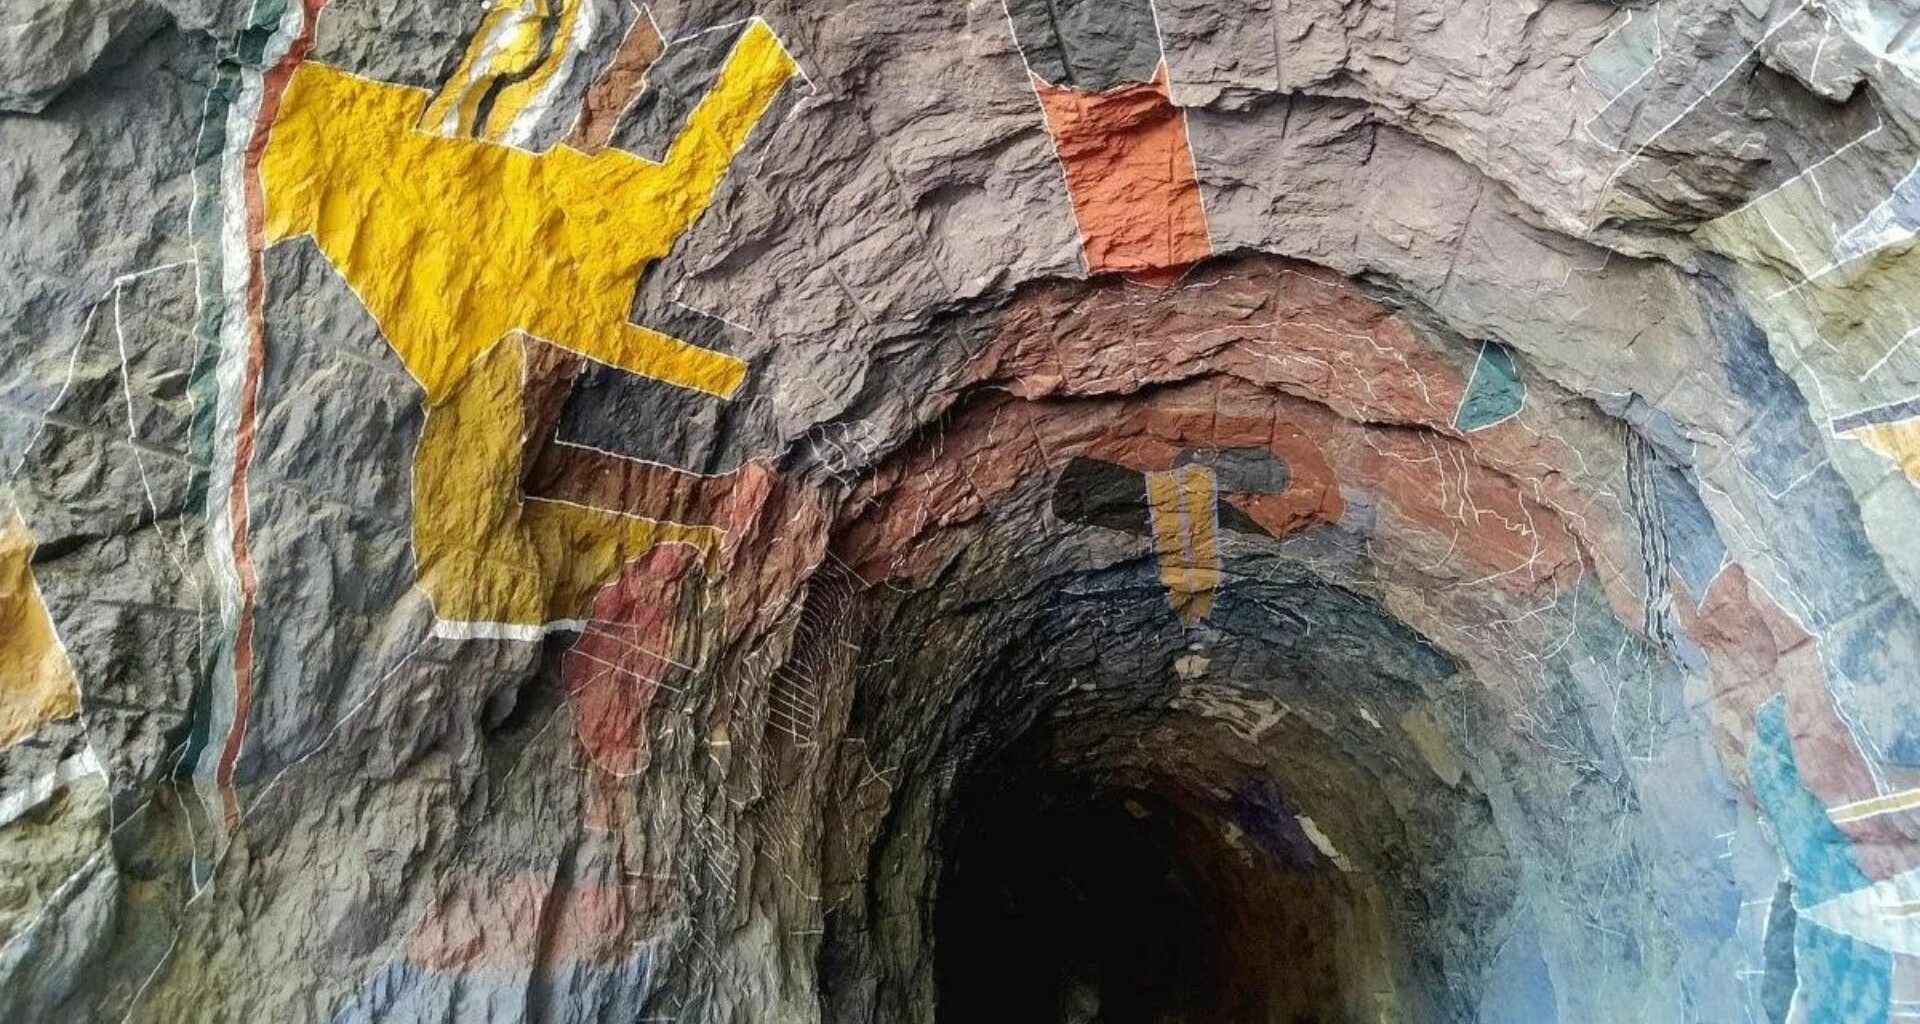 Presa Huites: sitio de 5 mil metros de pinturas rupestres